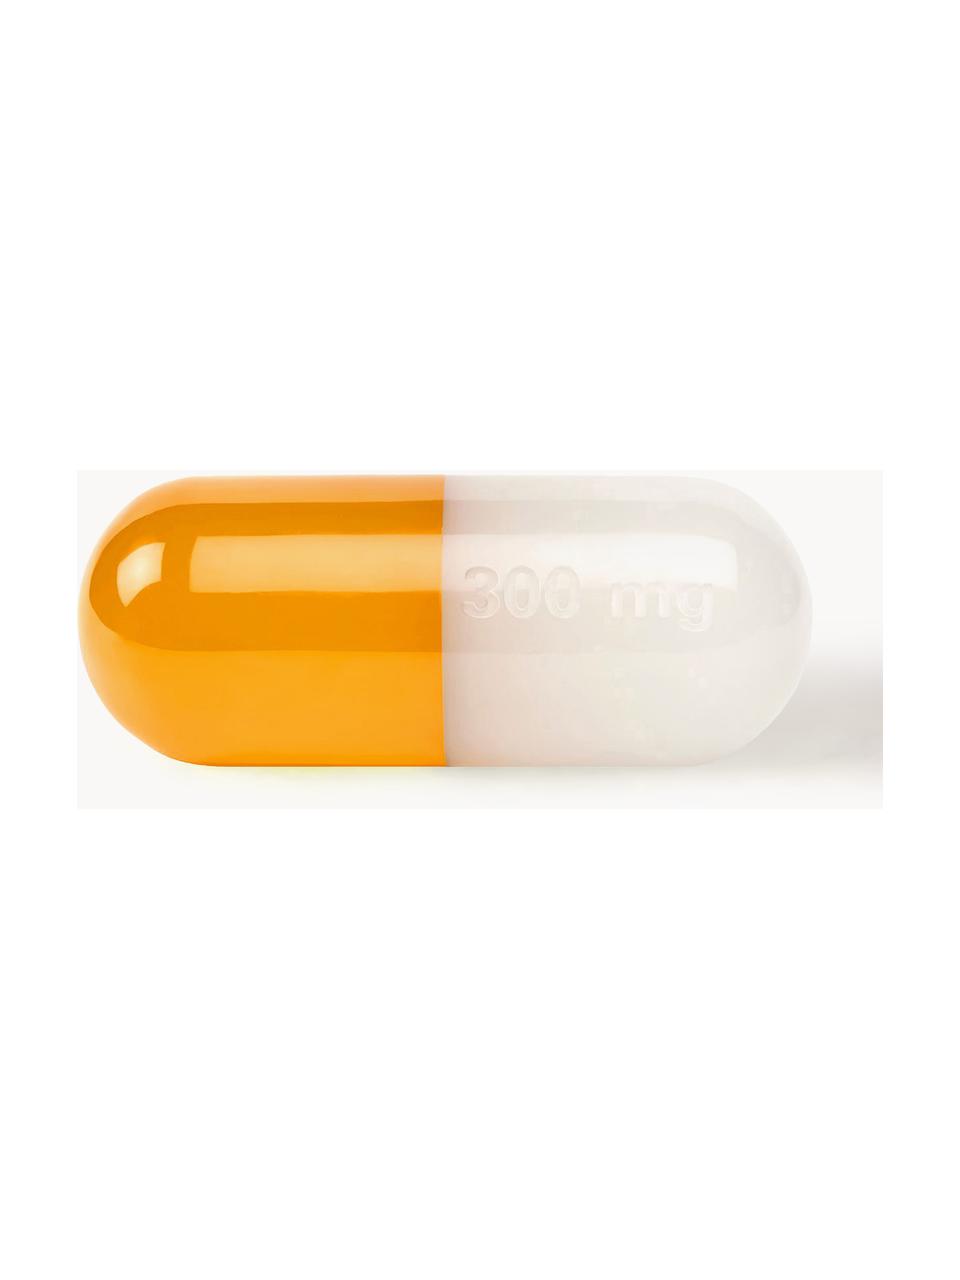 Oggetto decorativo Pill, Poliacrilico, lucido, Bianco, arancione, Larg. 24 x Alt. 12 cm